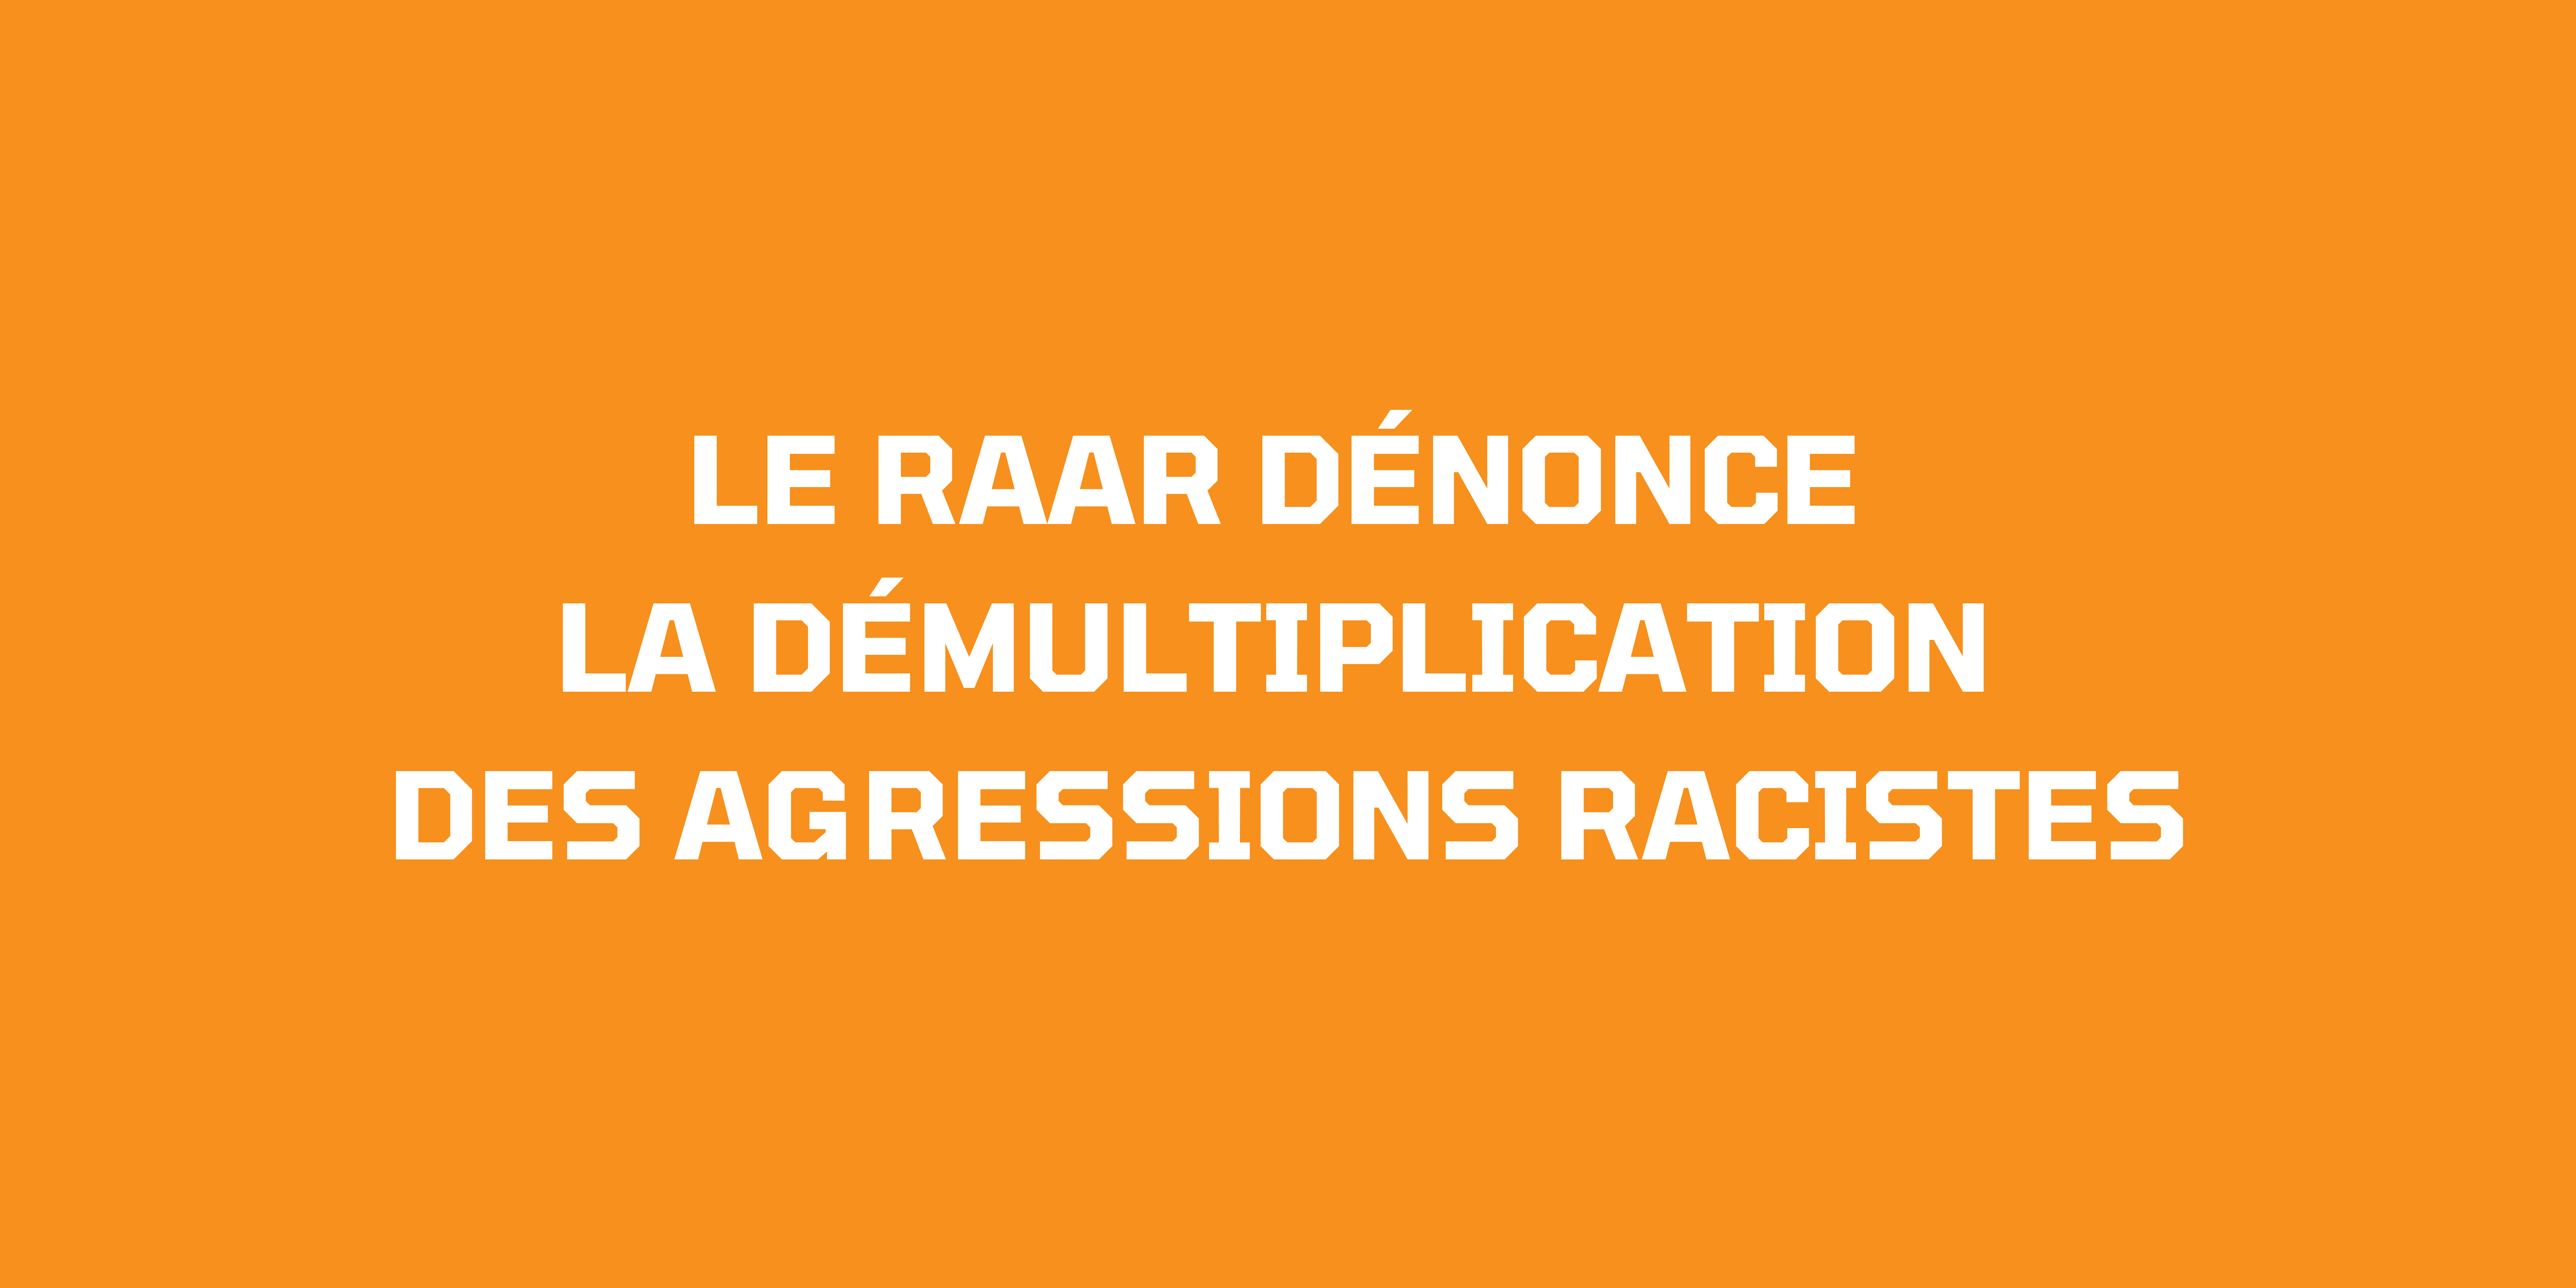 Le RAAR dénonce la démultiplication des agressions racistes